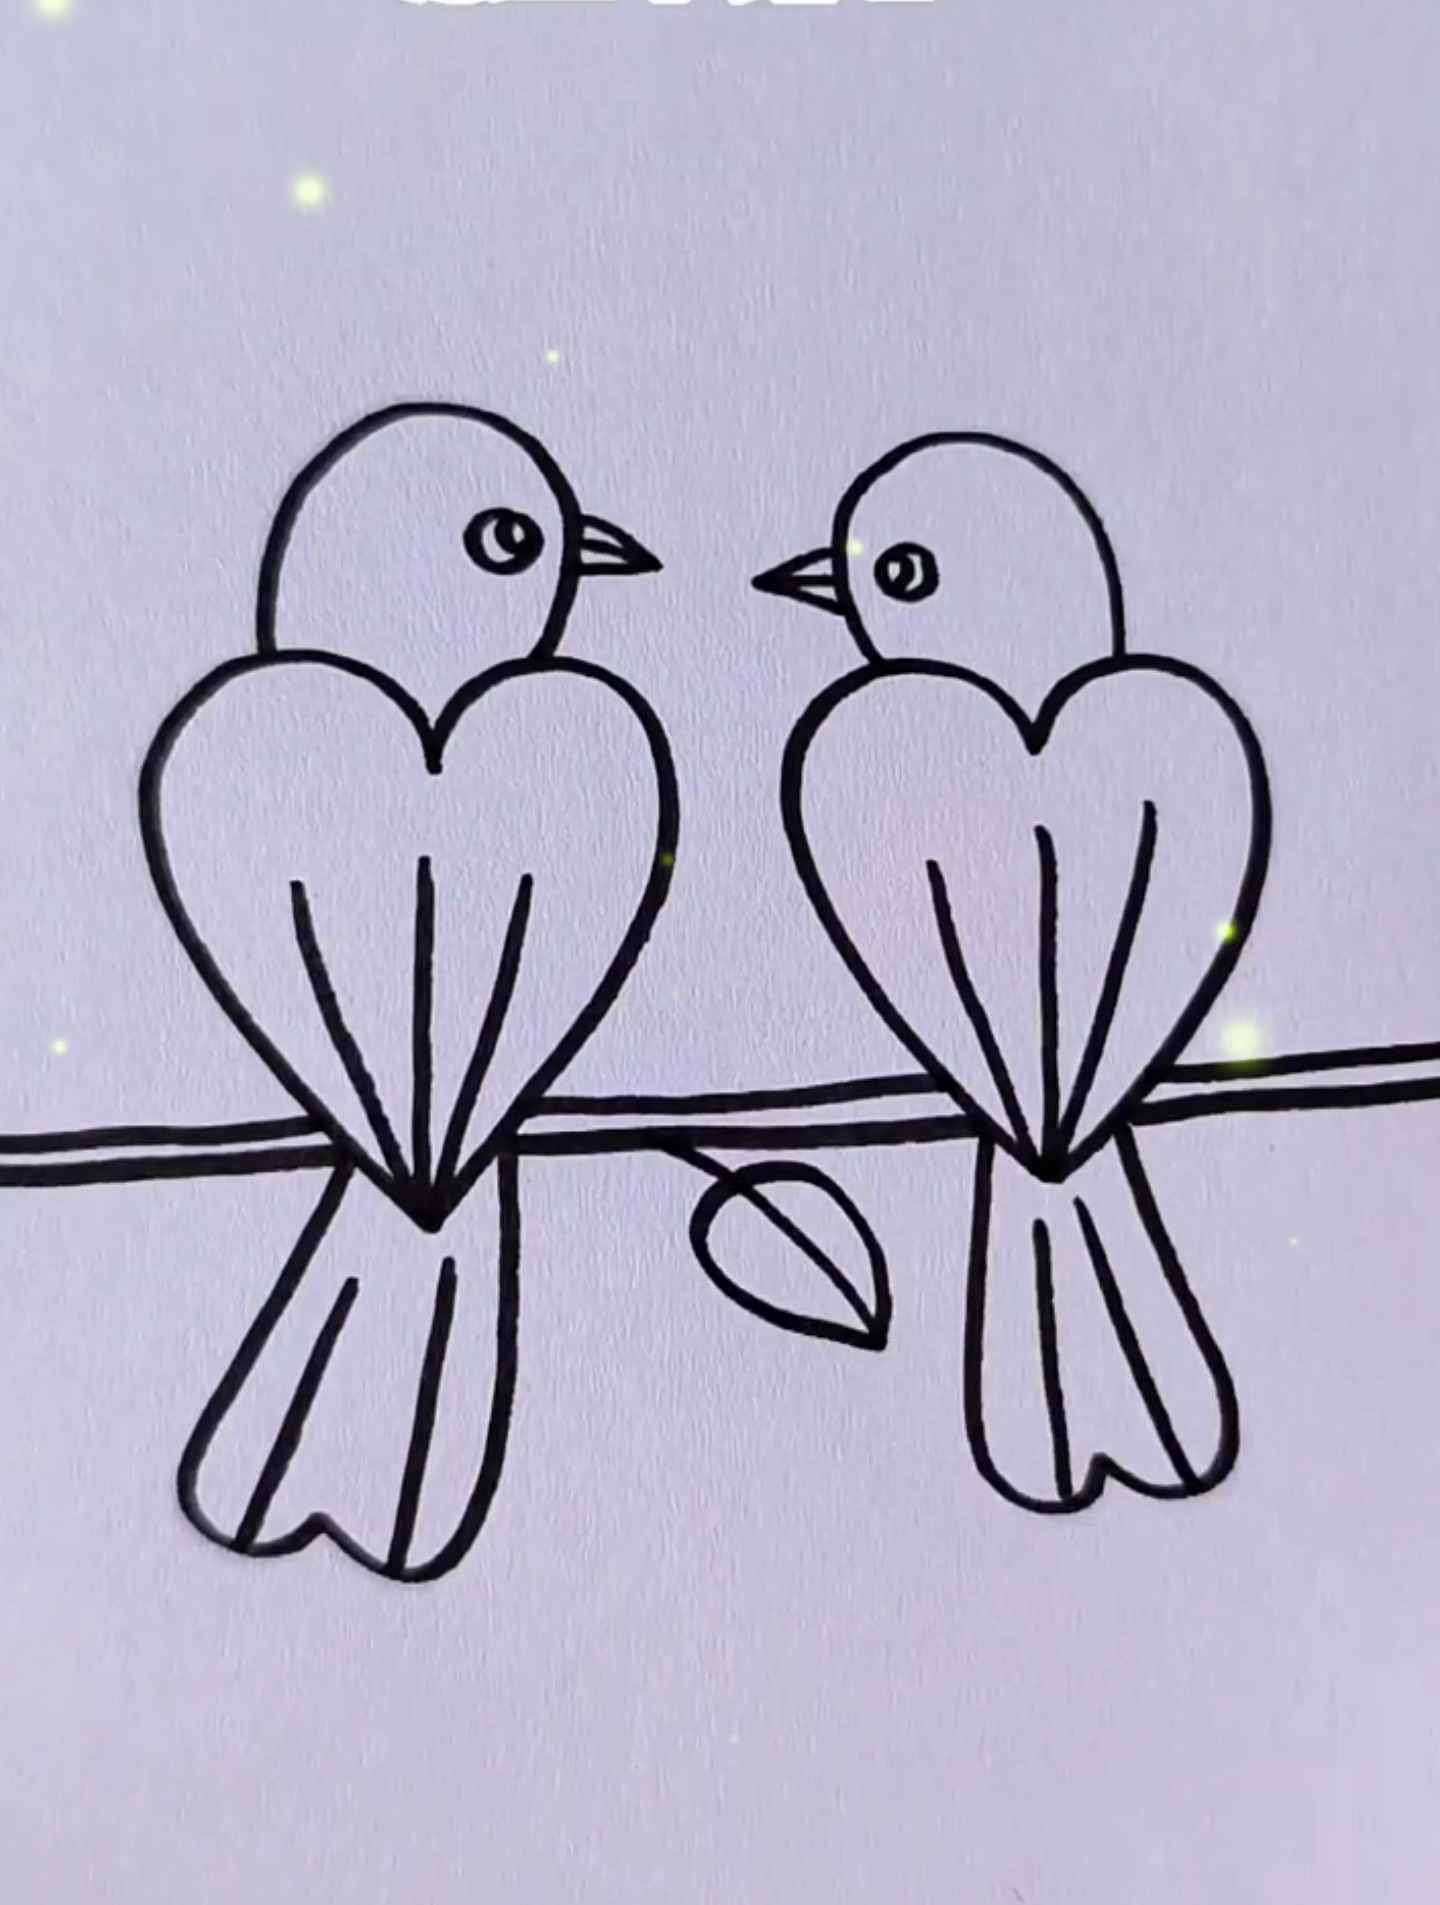 用四颗爱心画小鸟,简单有趣易学一起来画吧!